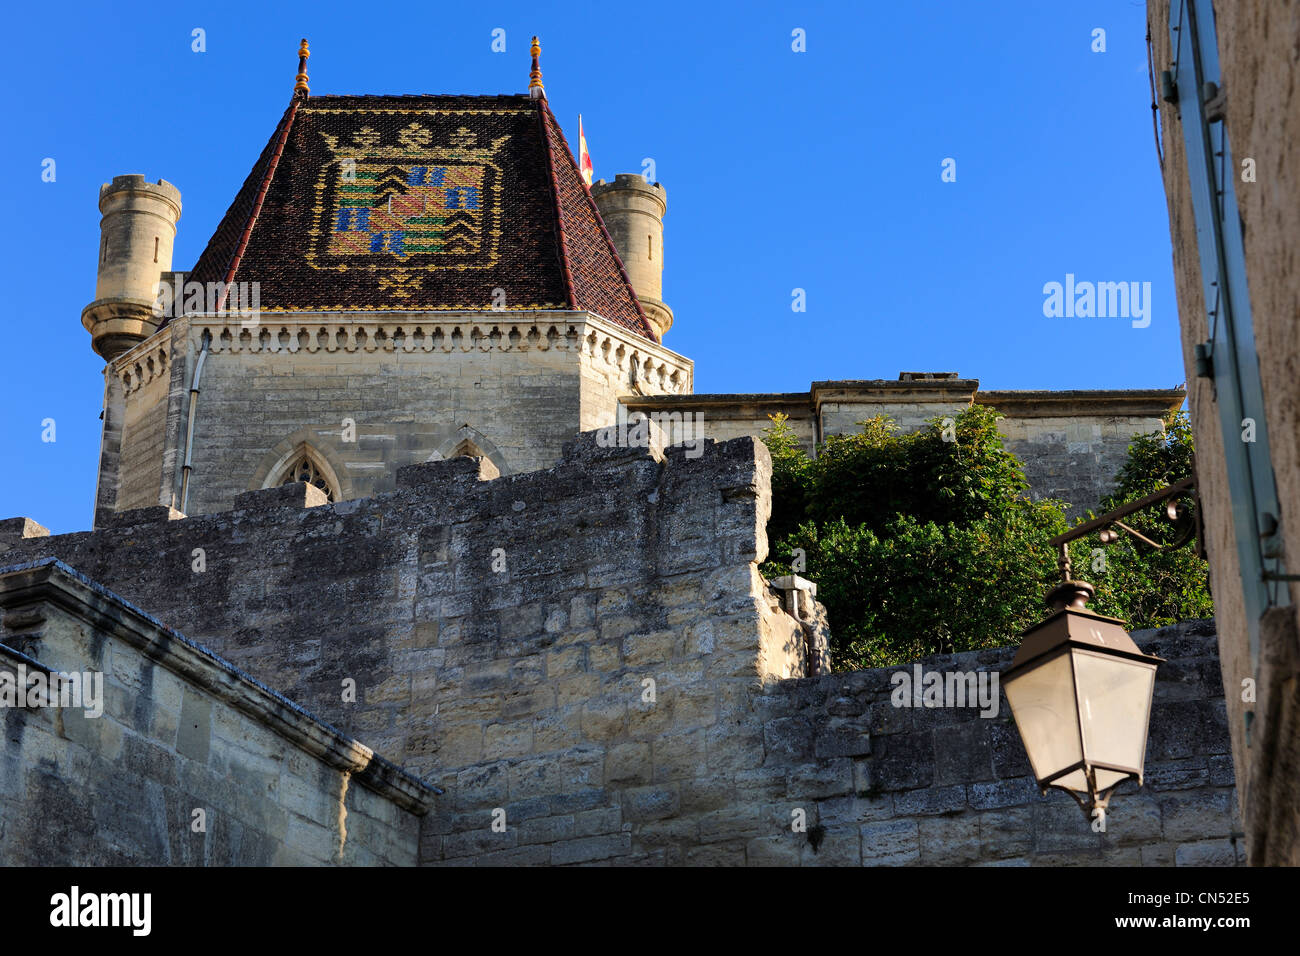 France, Gard, Pays d'Uzege, Uzes, Duke's castle called the Duche d'Uzes, the chapel's roof Stock Photo